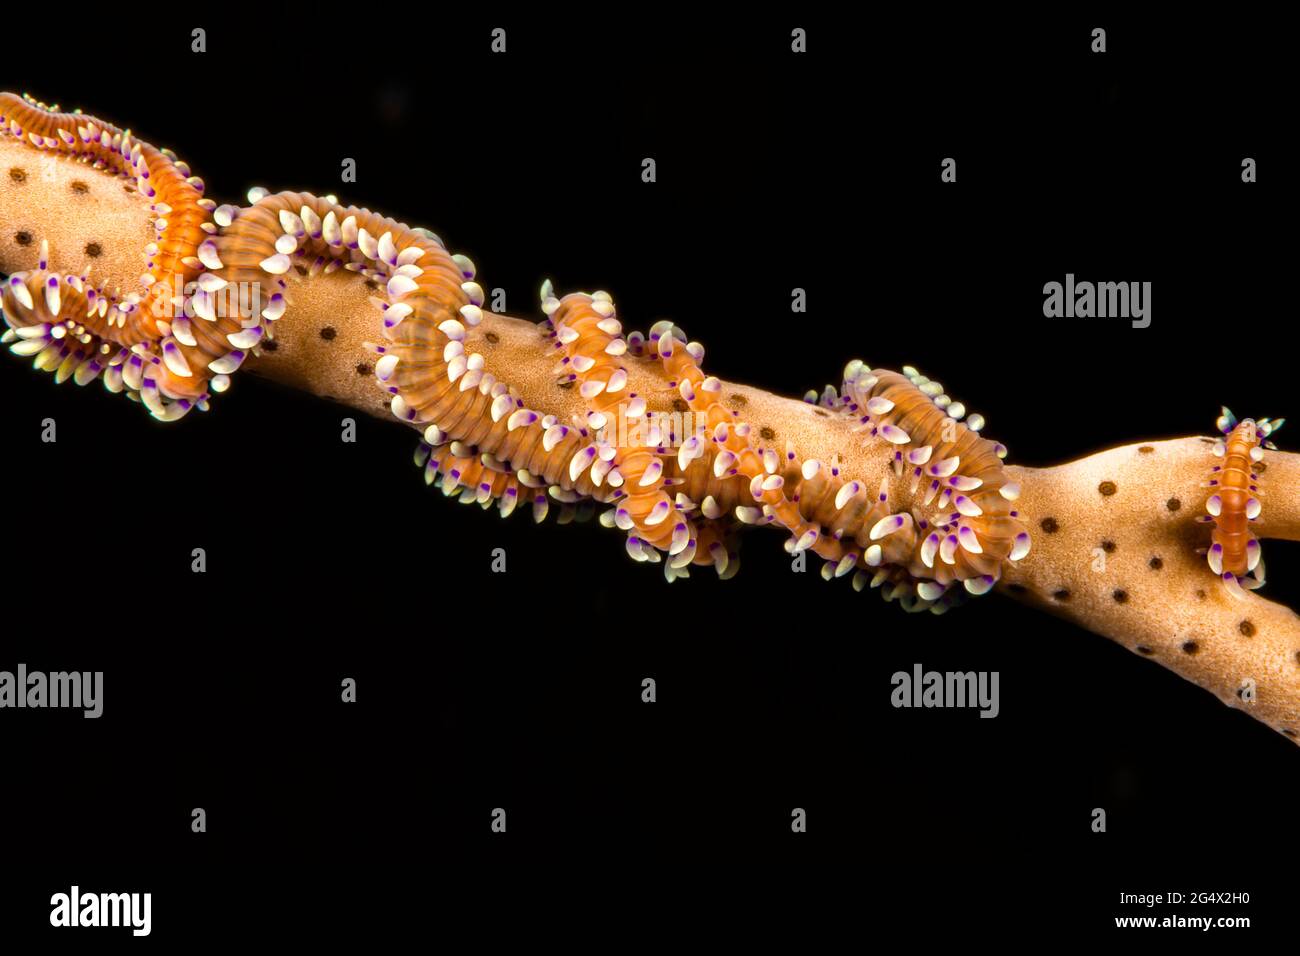 Il verme ottocorale di Phil, Alcyonosyllis phili, può raggiungere i 5 pollici di lunghezza e si trovano su coralli molli e tifosi gorgoniani, Yap, Micronesia. Foto Stock